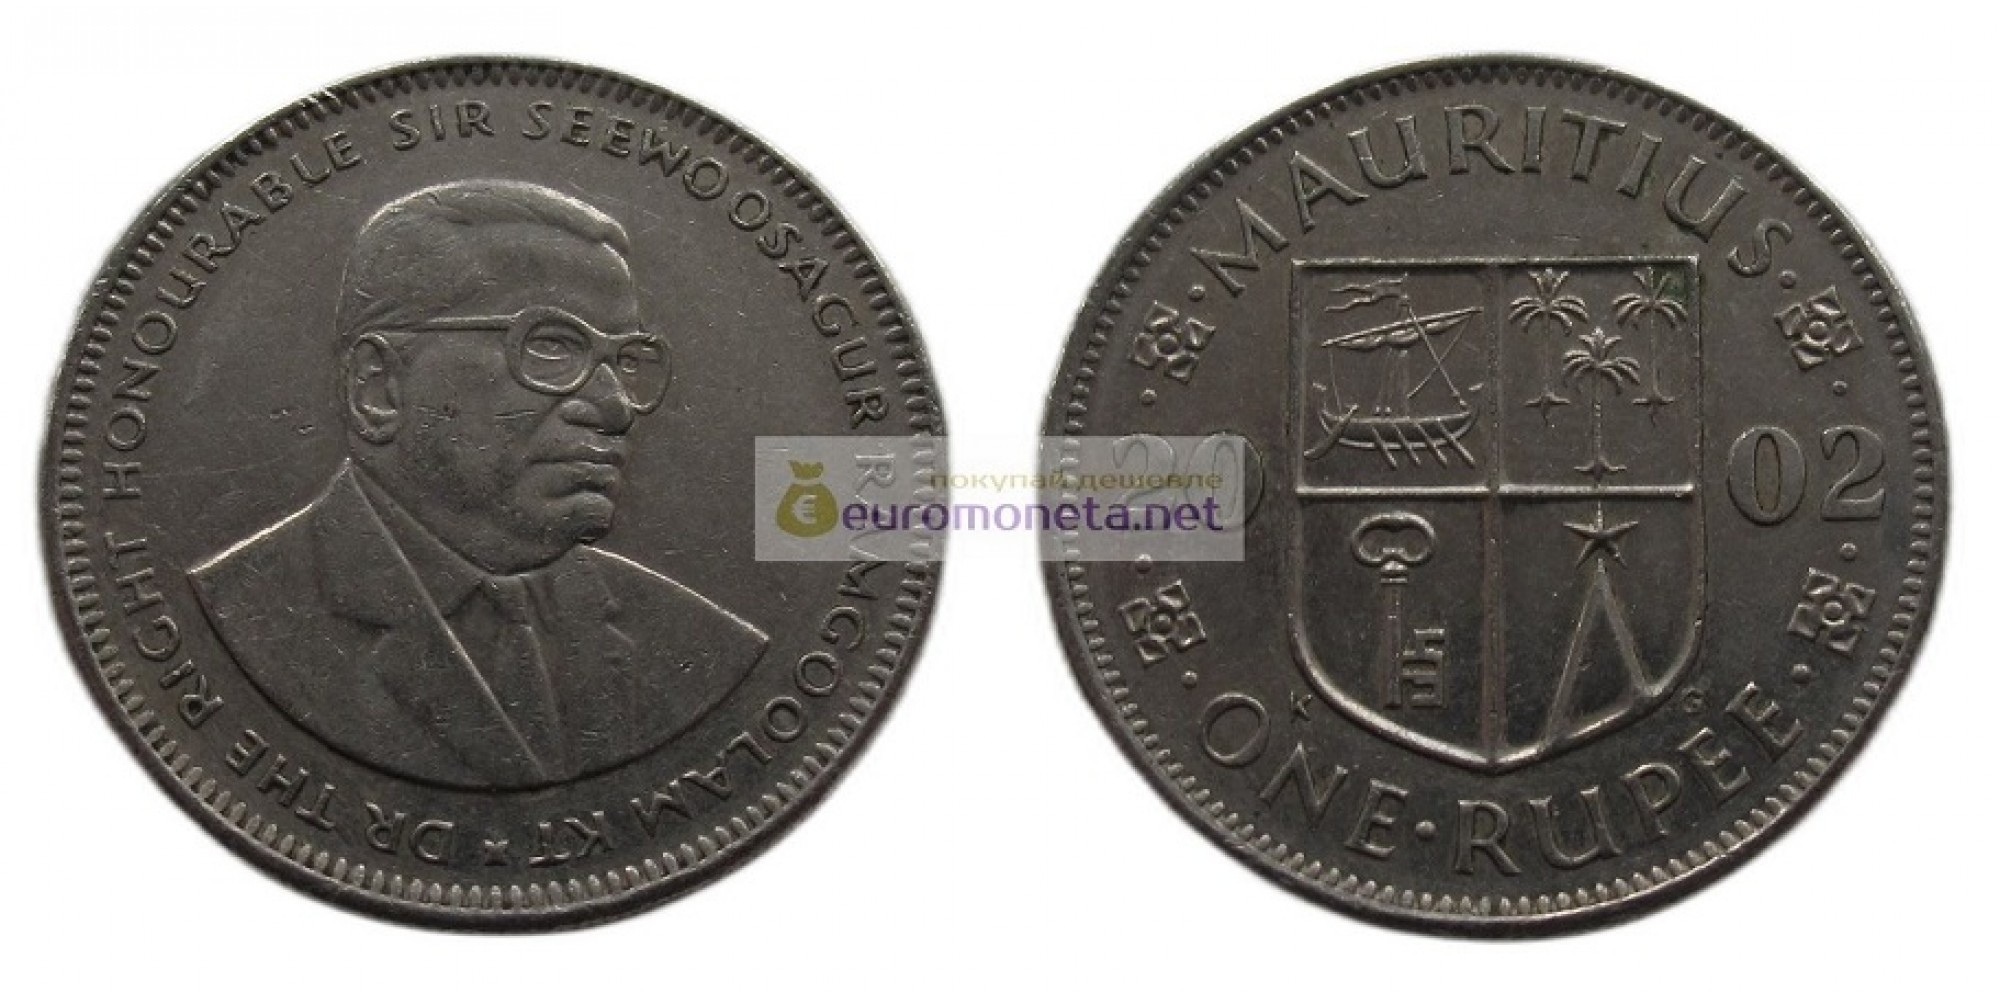 Республика Маврикий 1 рупия 2002 год. Сивусагур Рамгулам